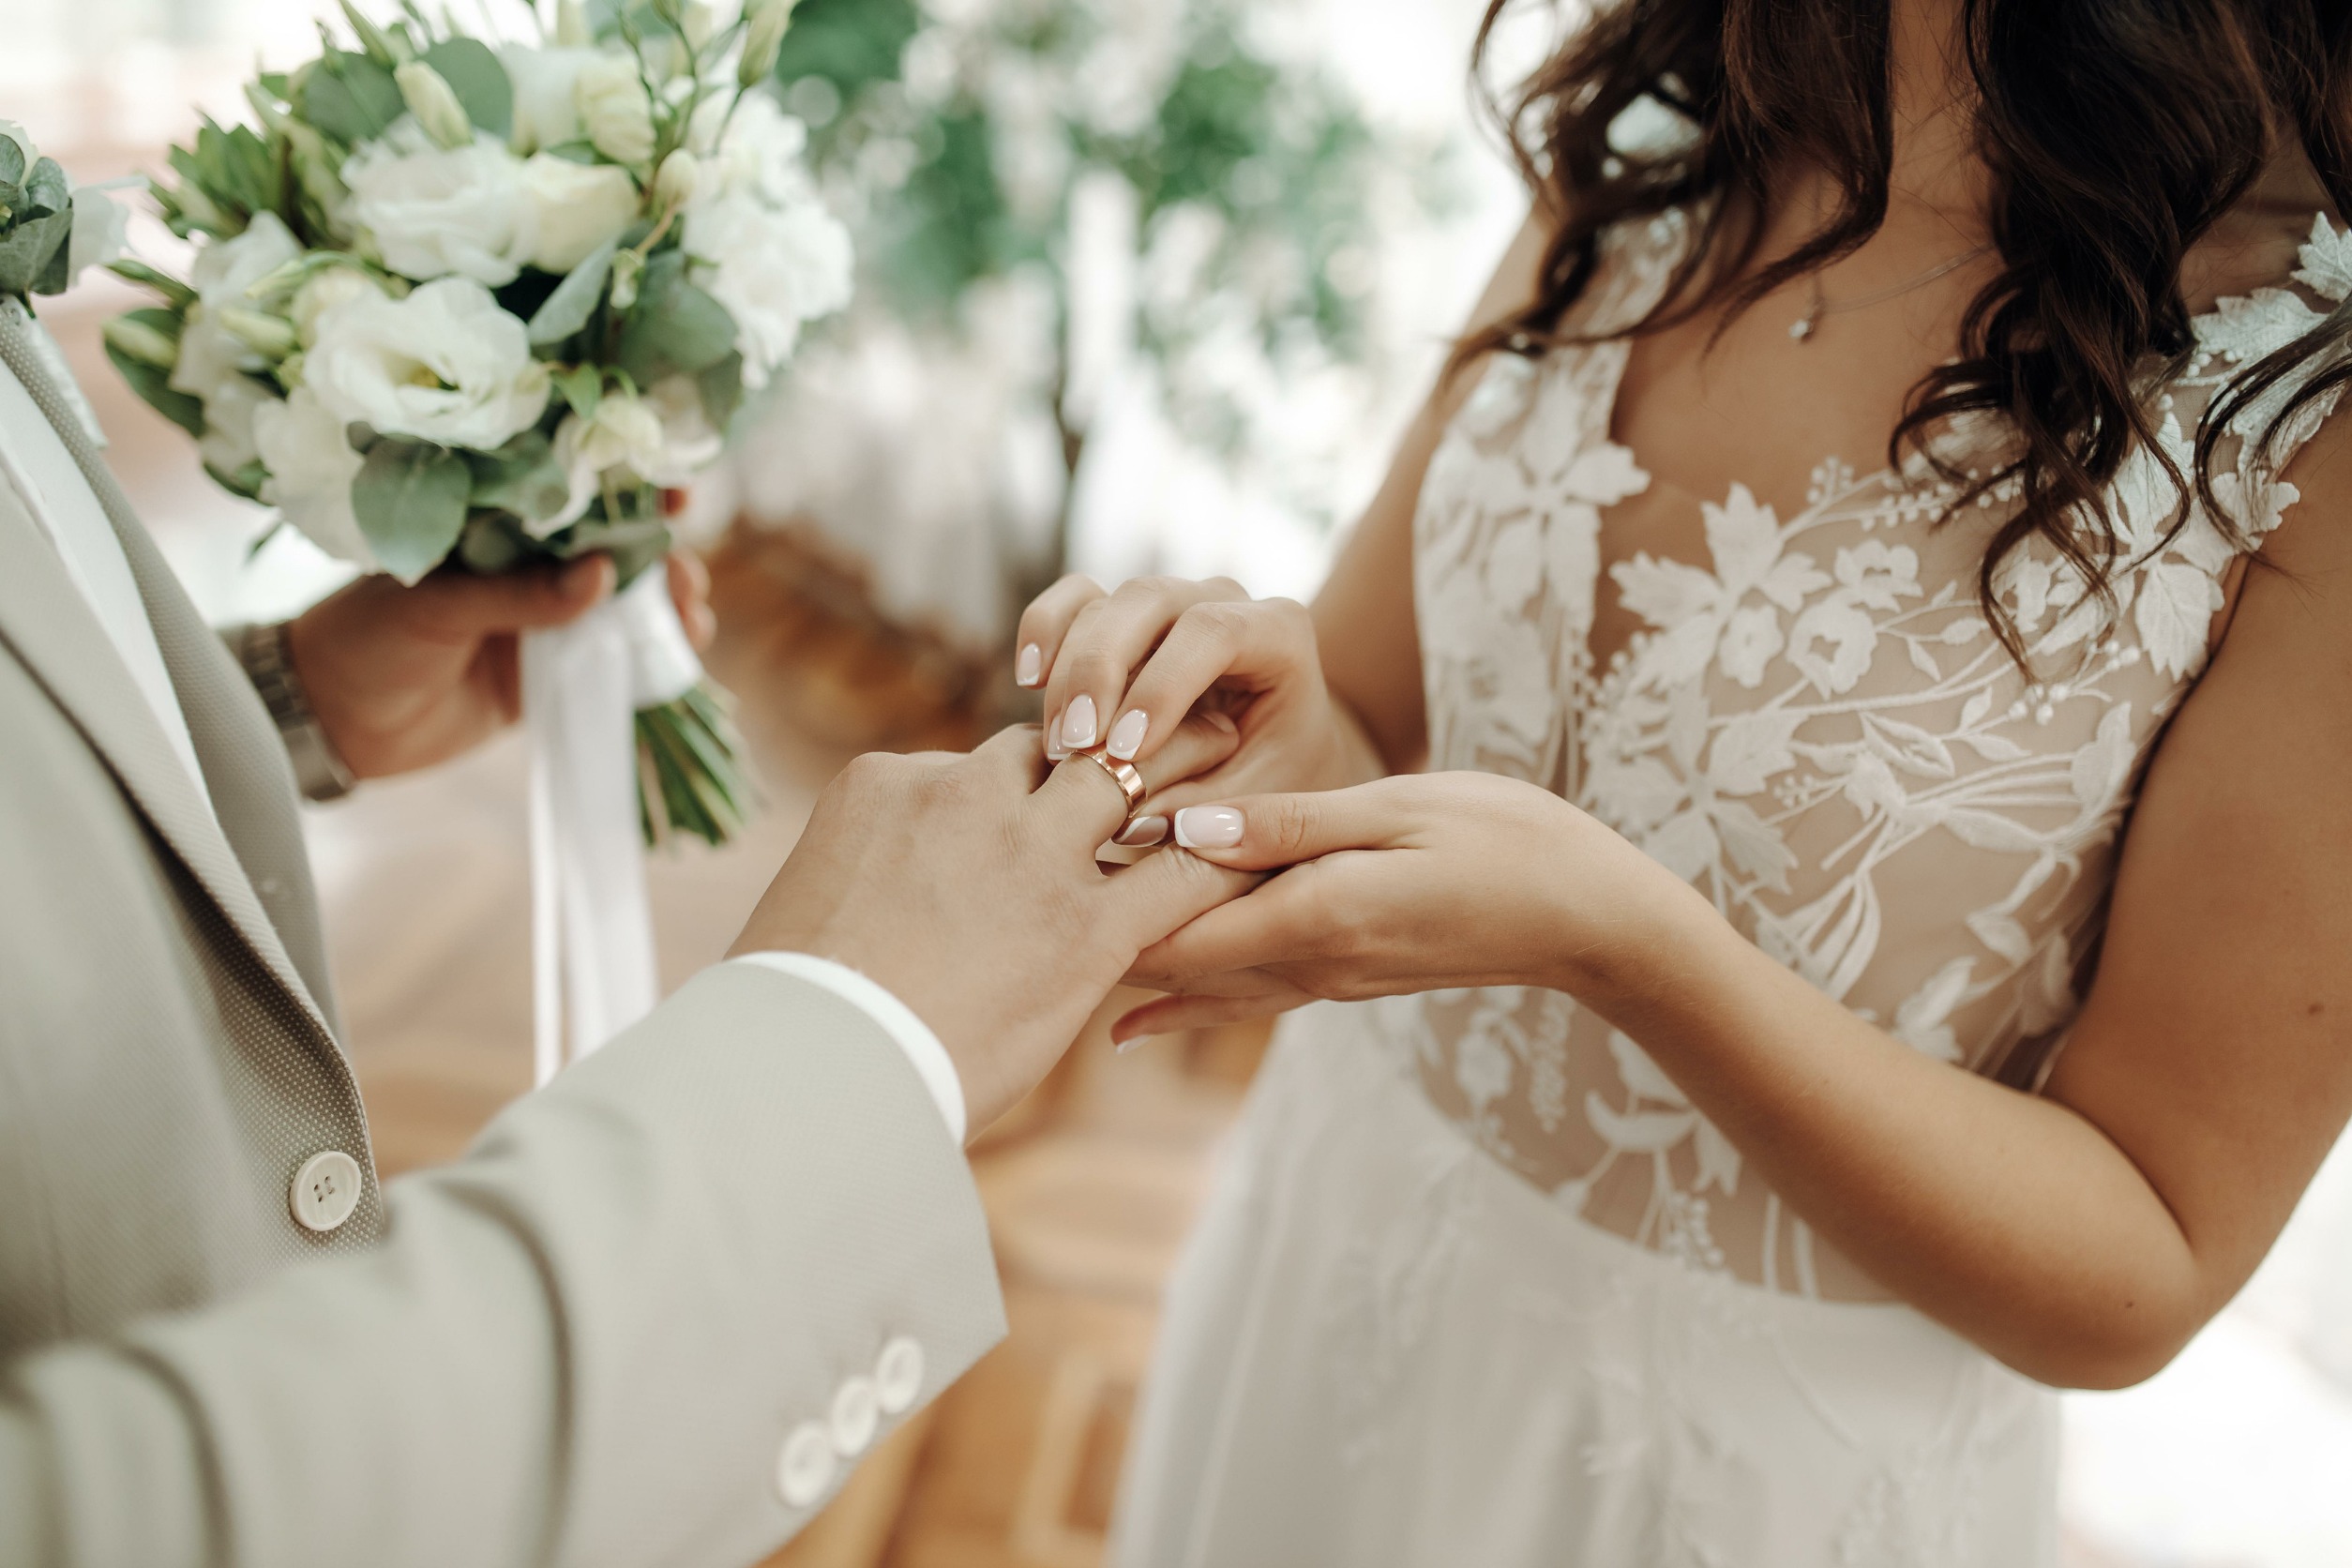 婚戒是愛情和婚姻的象徵，改裝婚戒可以將舊的婚戒融入新的設計中，意義更深遠。圖/123RF圖庫